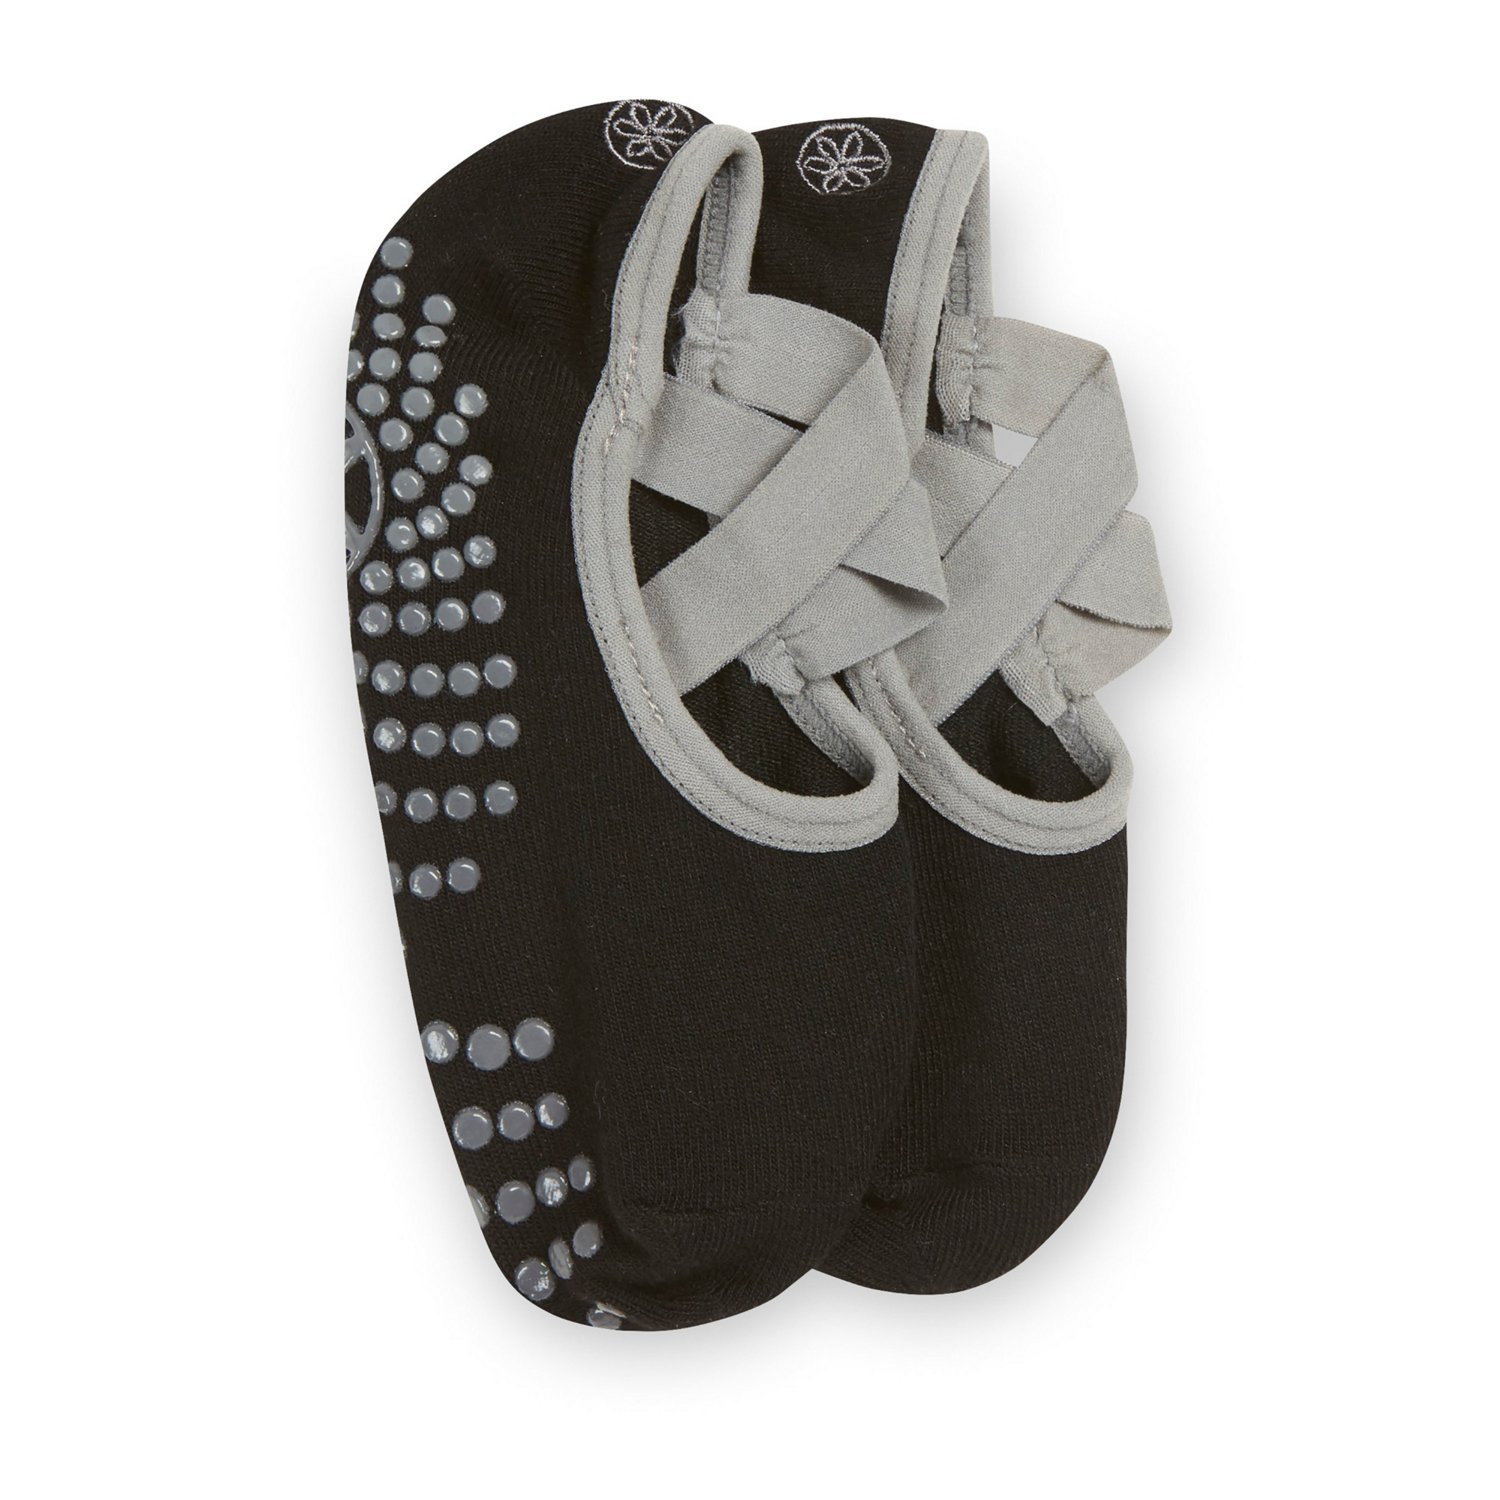 Gaiam Yoga Socks, Black, 2-pk